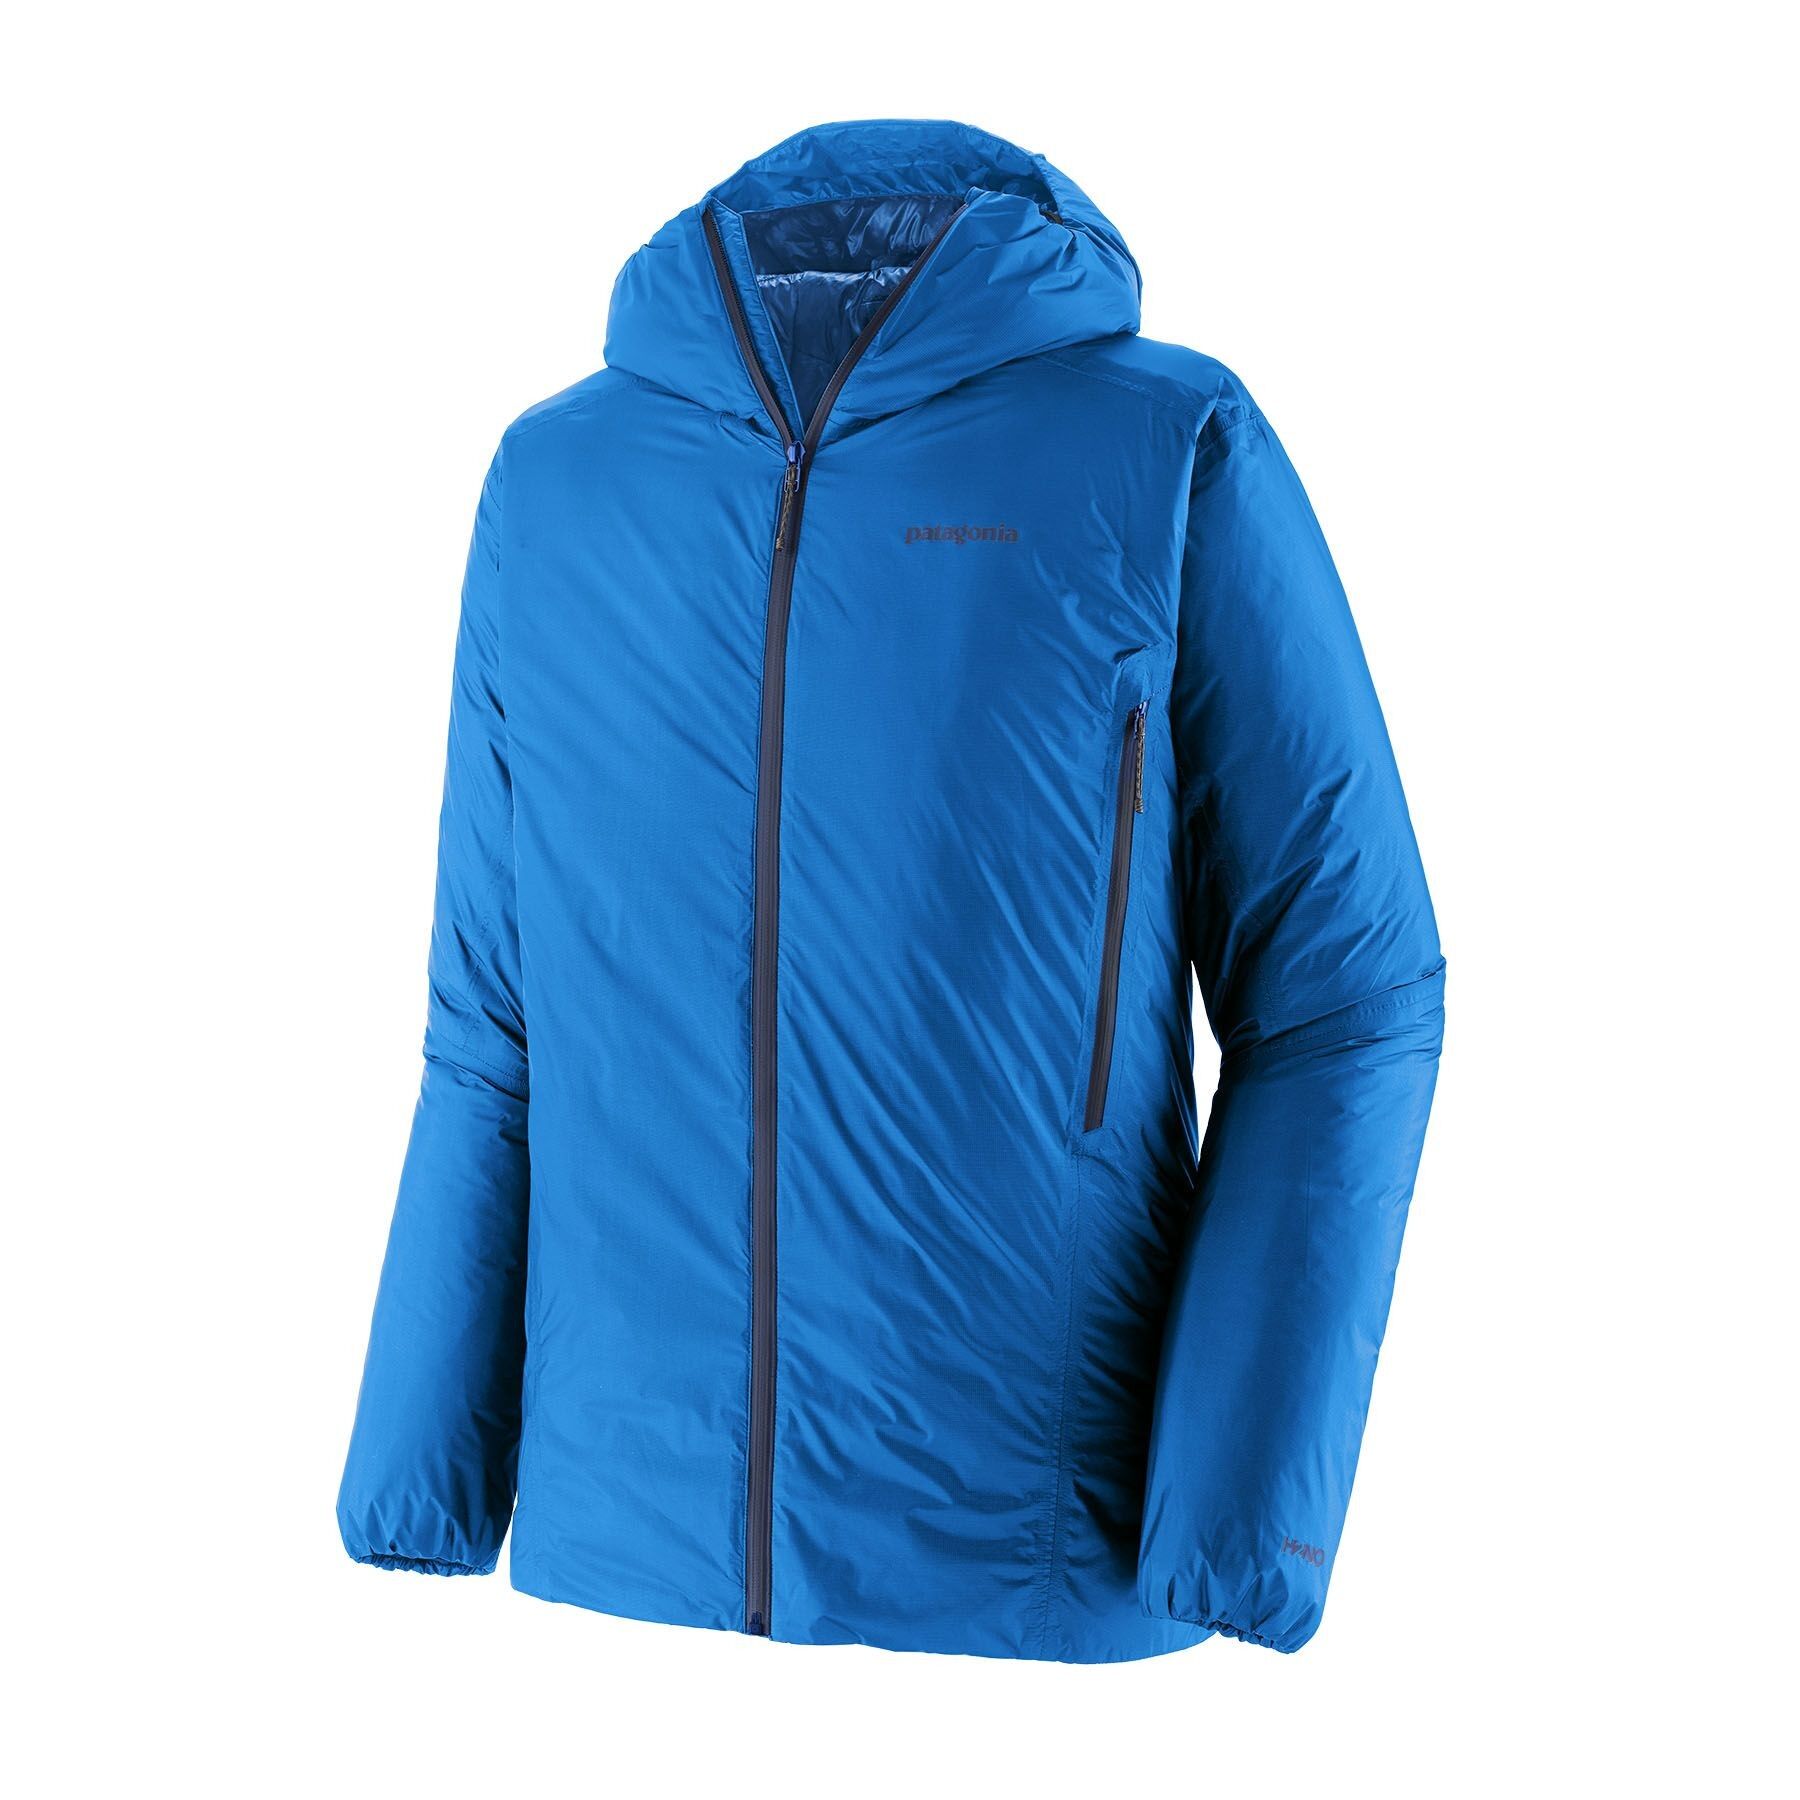 Patagonia Micropuff Storm Jacket - Ski jacket - Men's